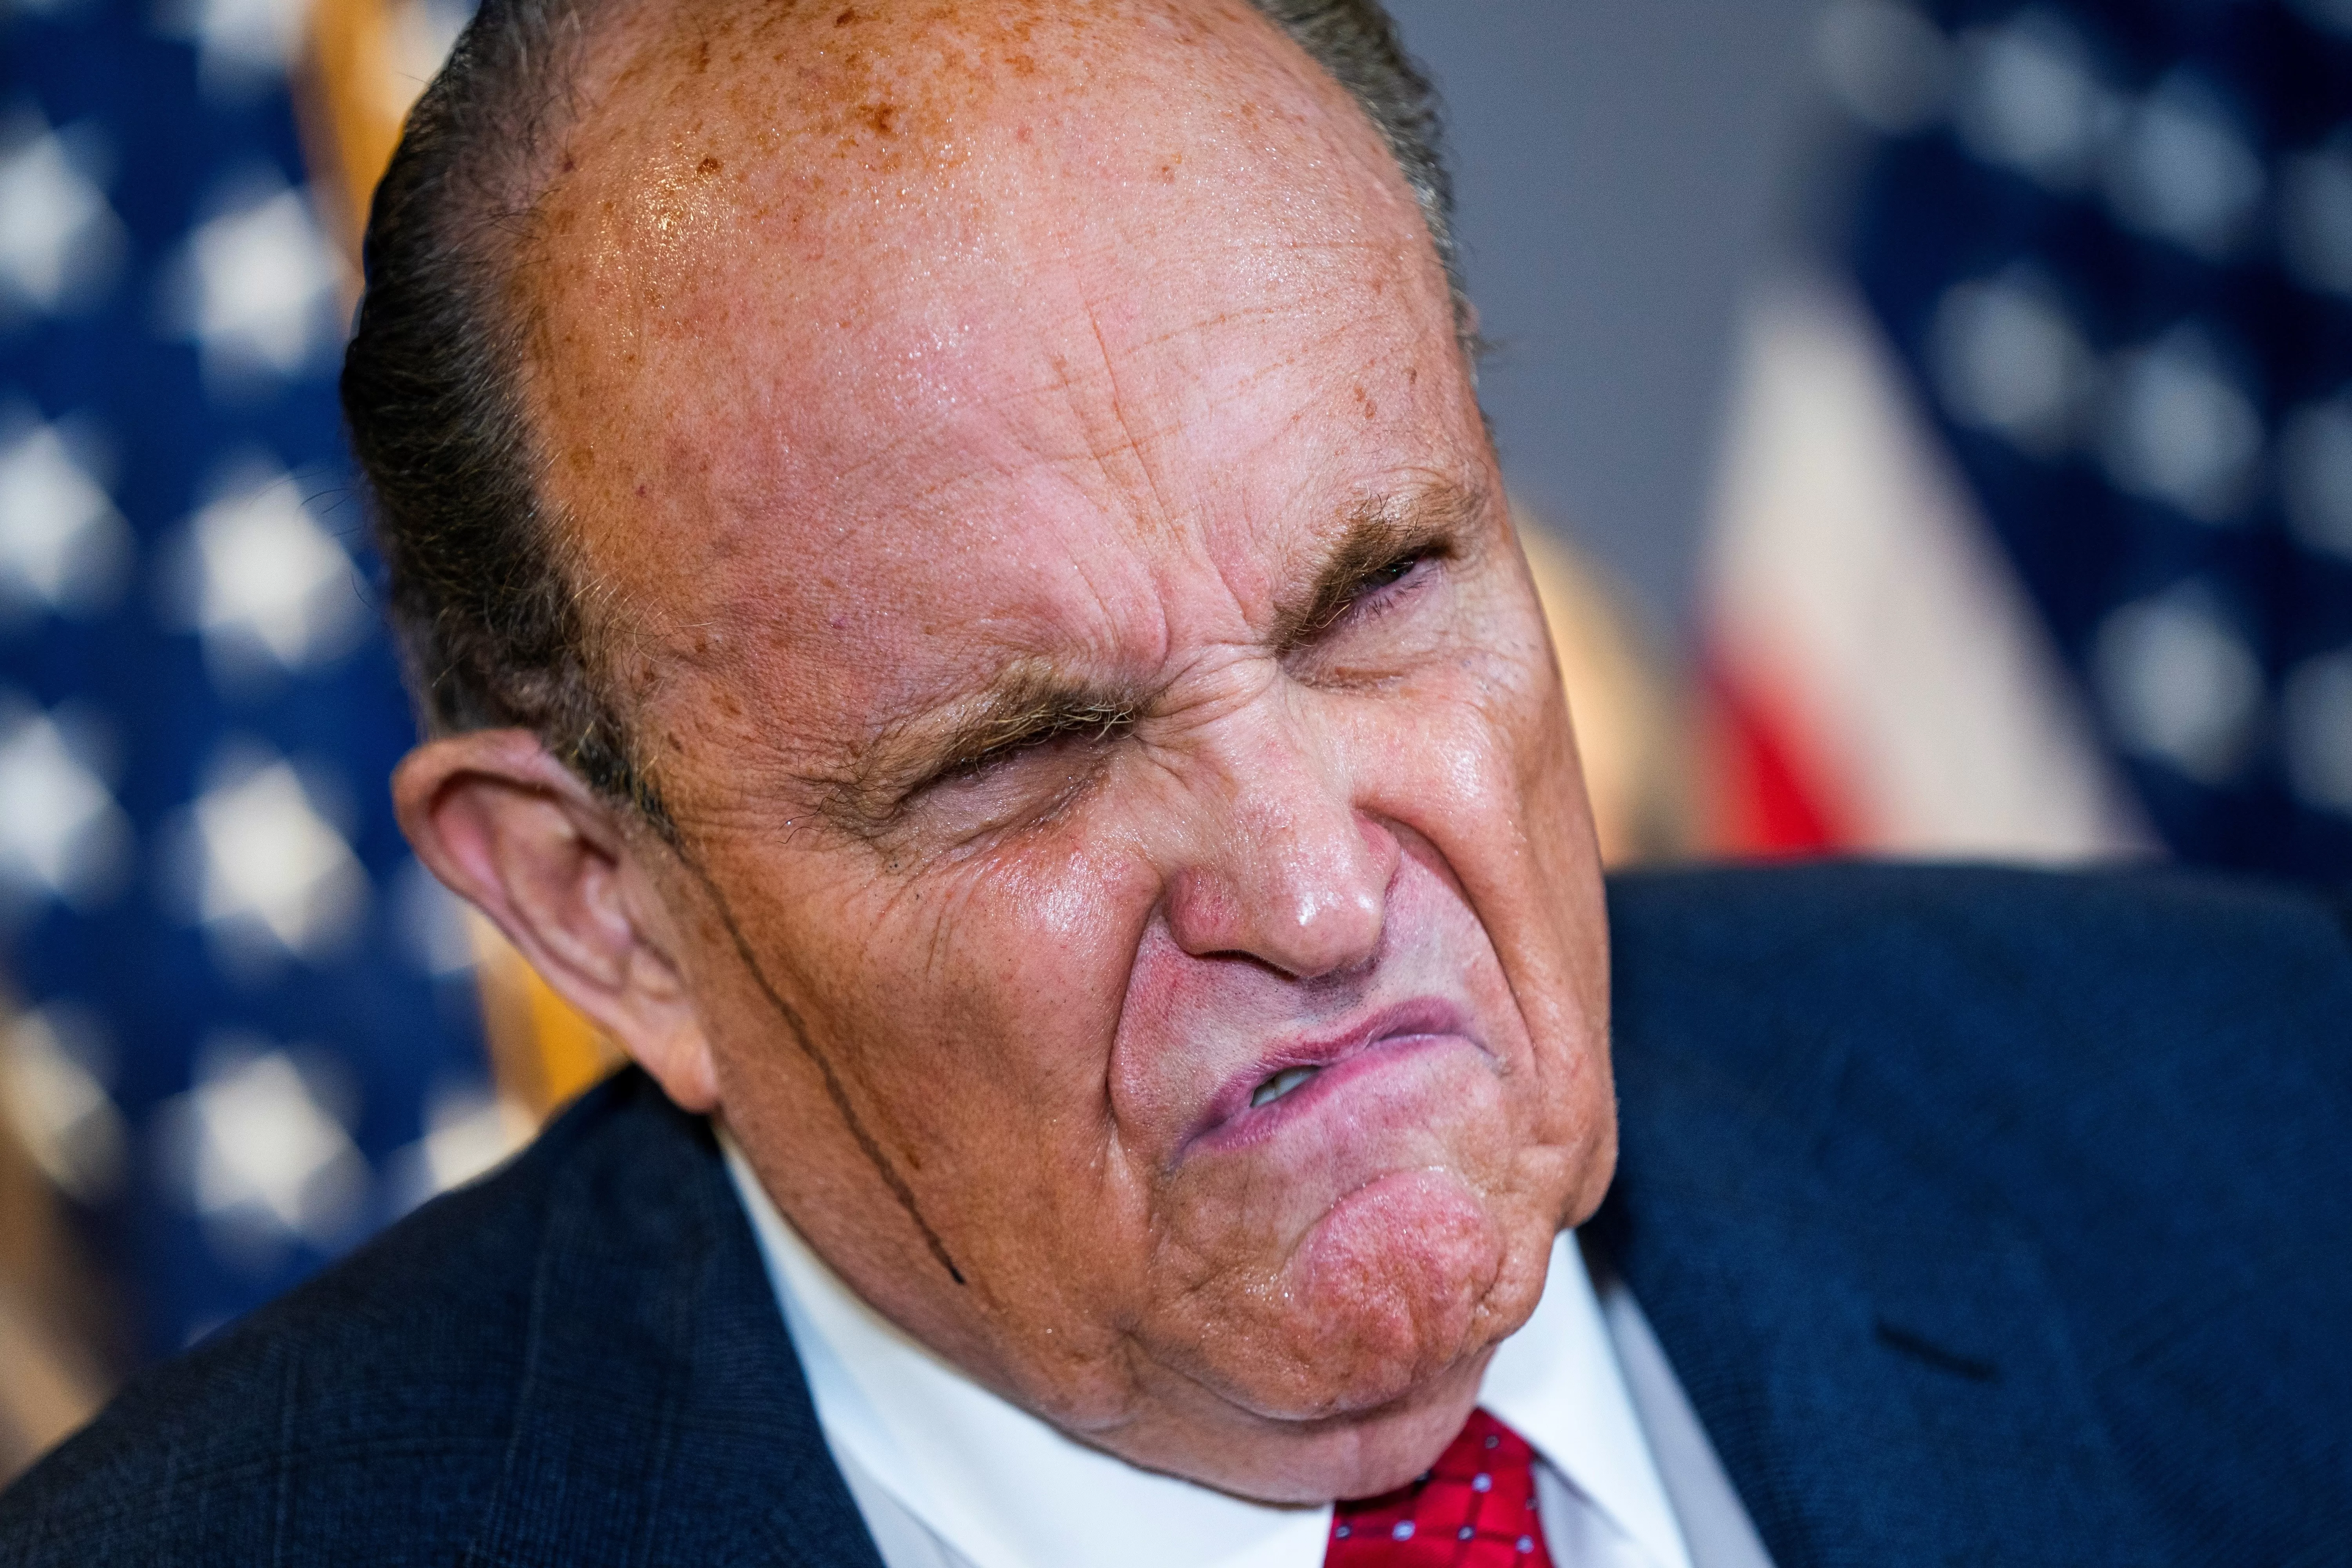 Rudy Giuliani, suspendido de abogacía, por tramposo y mentiroso